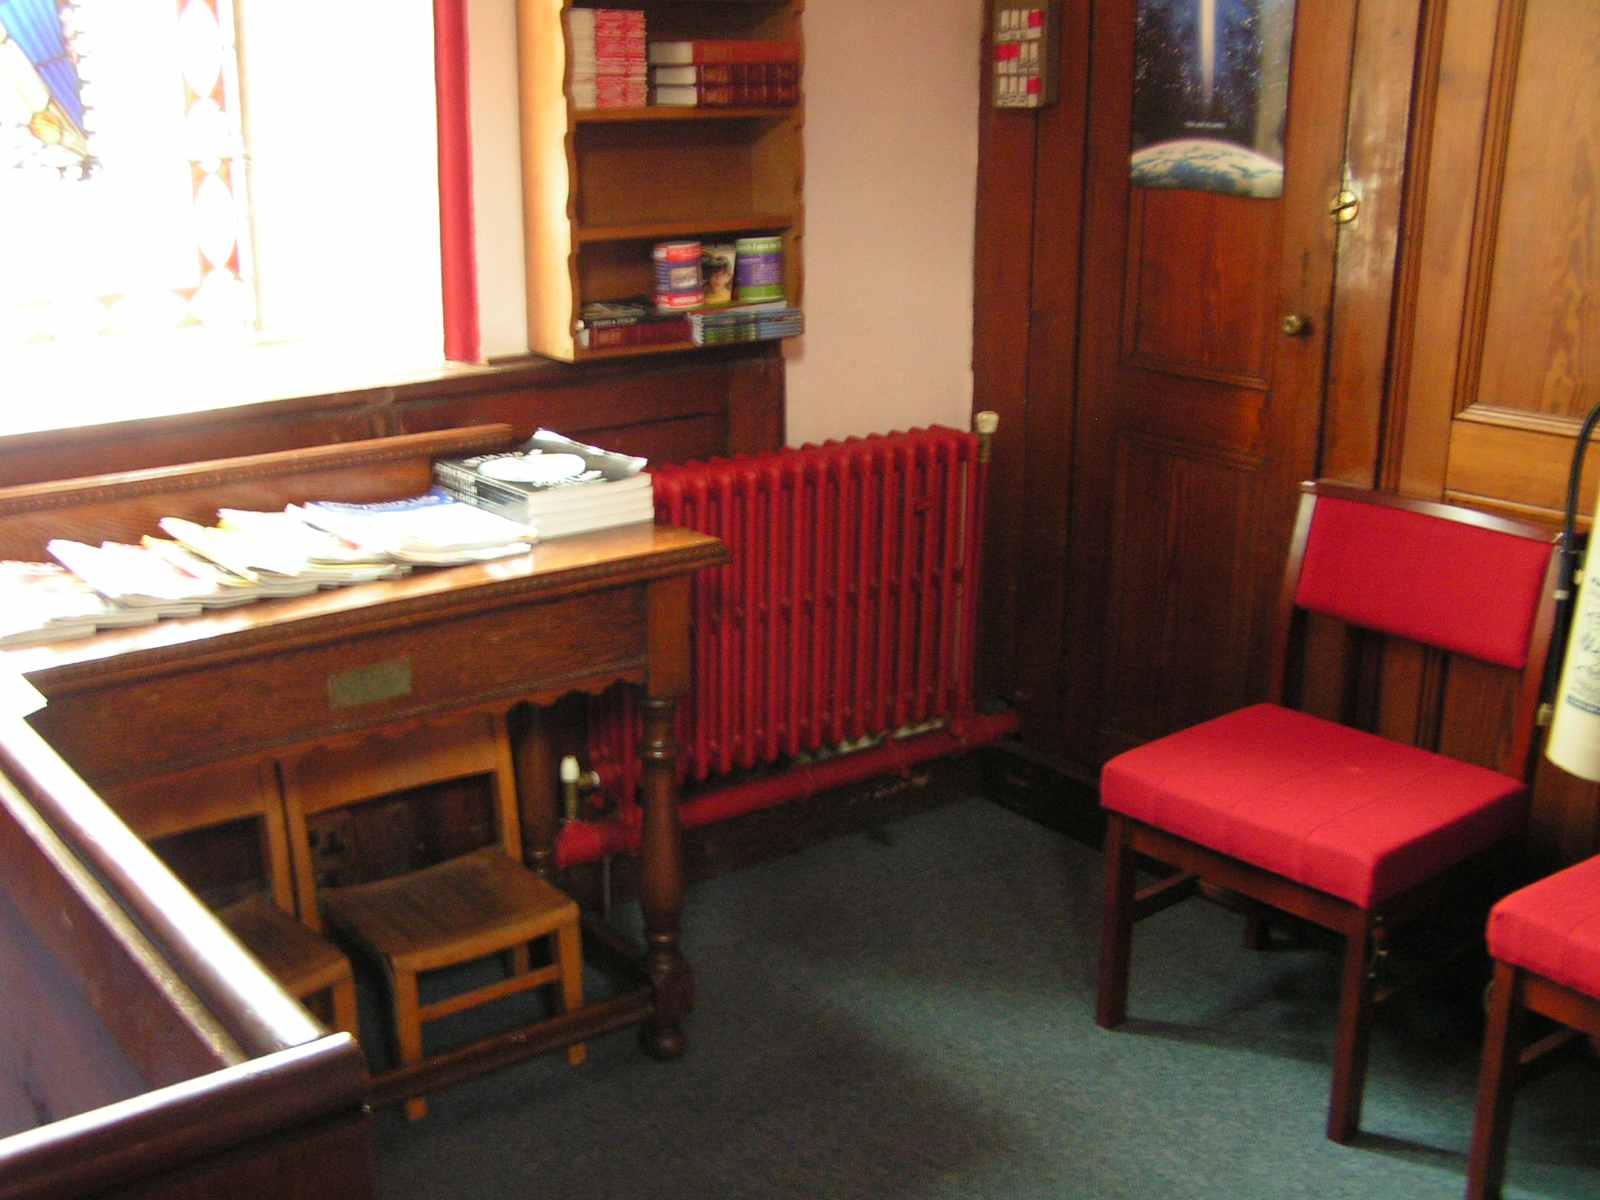 Chapel set out for serving teas.